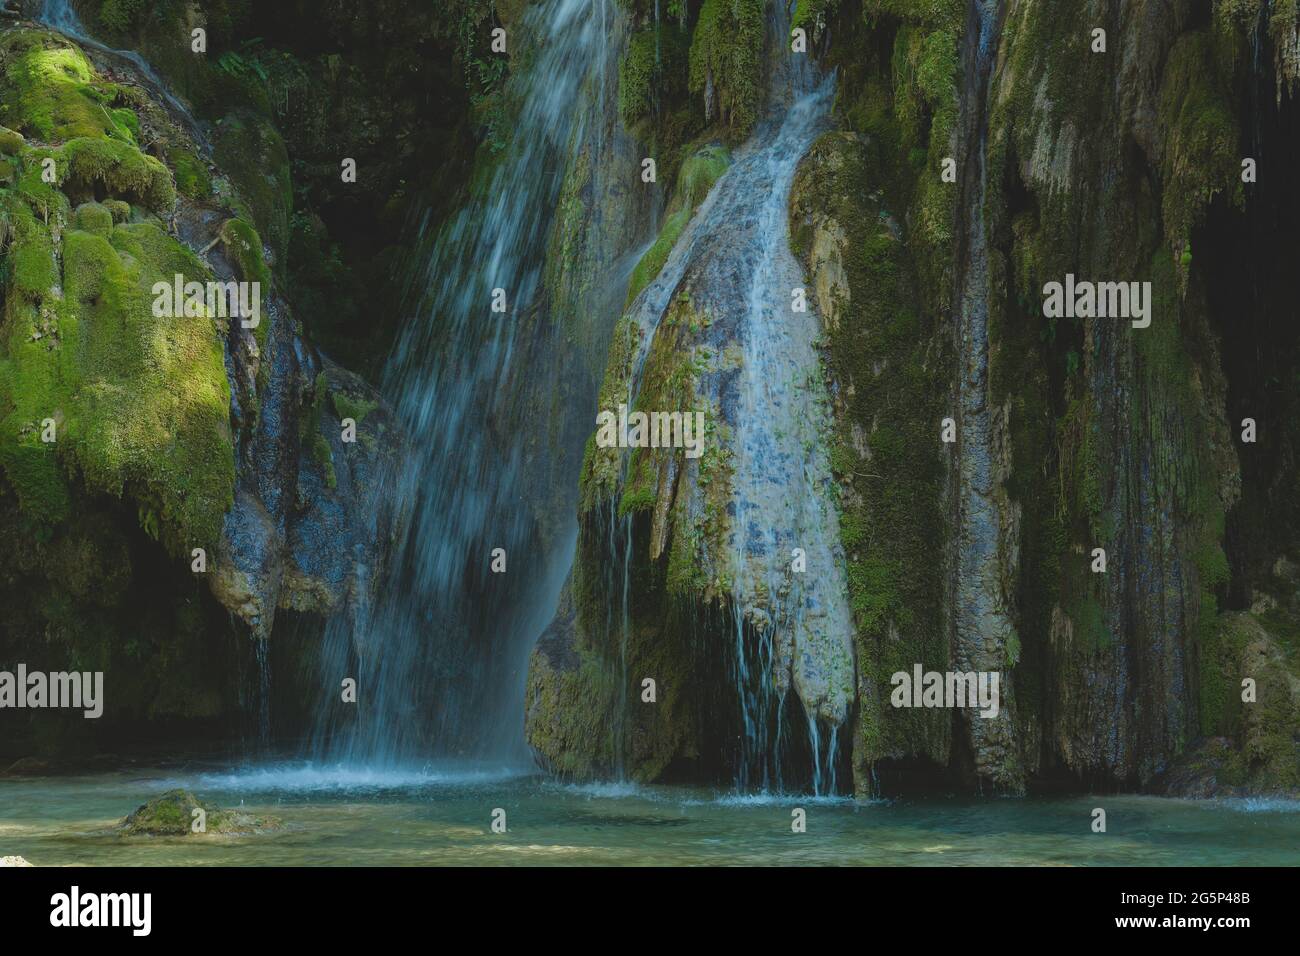 La cascade de tufa près d'Arbois. Chute d'eau cristalline, puissante chute d'eau. Banque D'Images